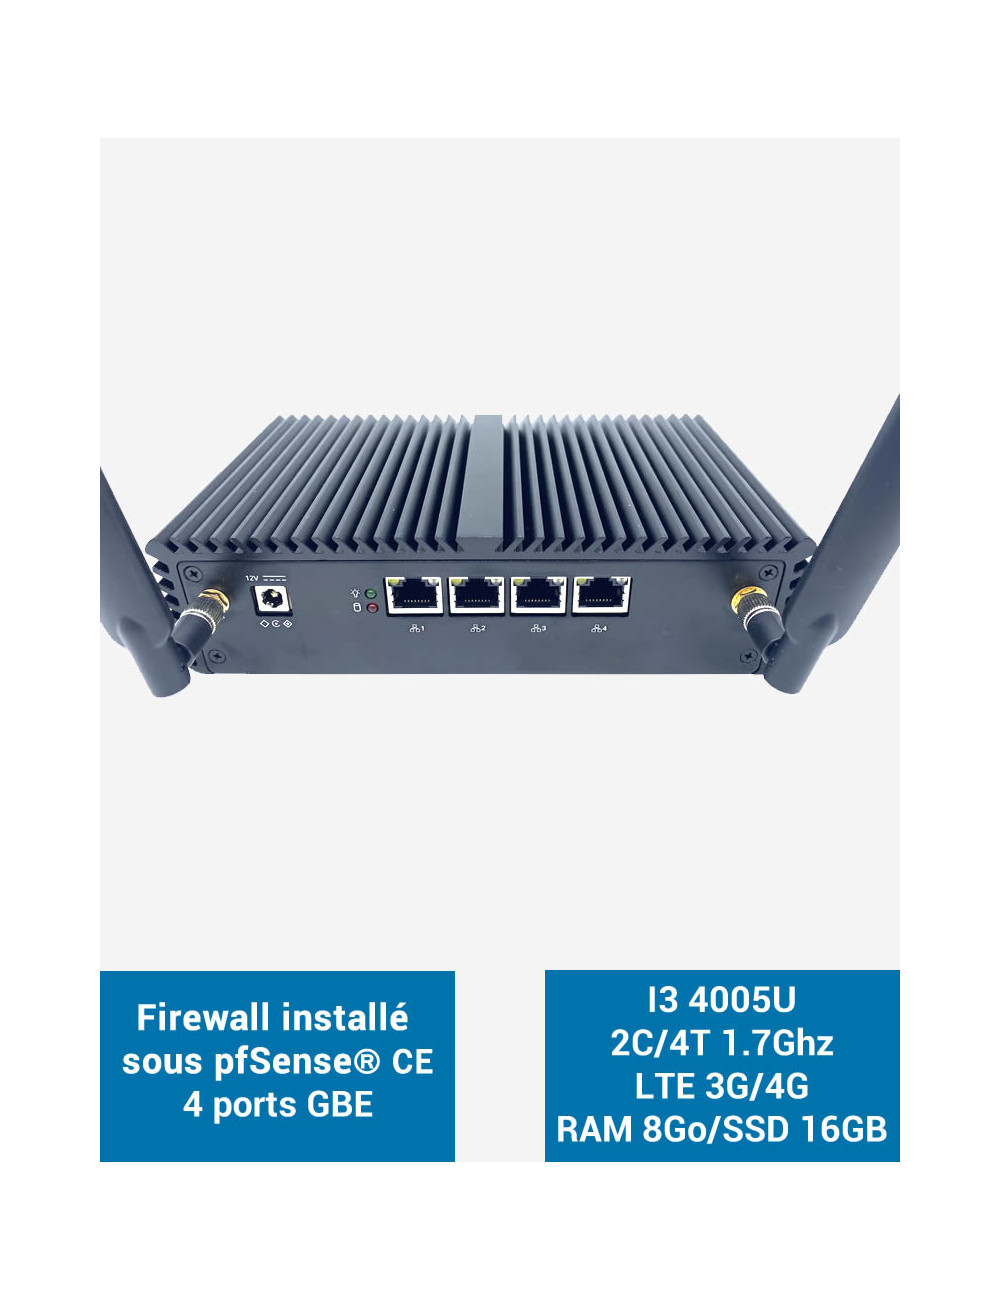 Firewall pfSense® Q3x I3 4005U 4 ports Gigabit LTE 4G 8GB SSD 16GB